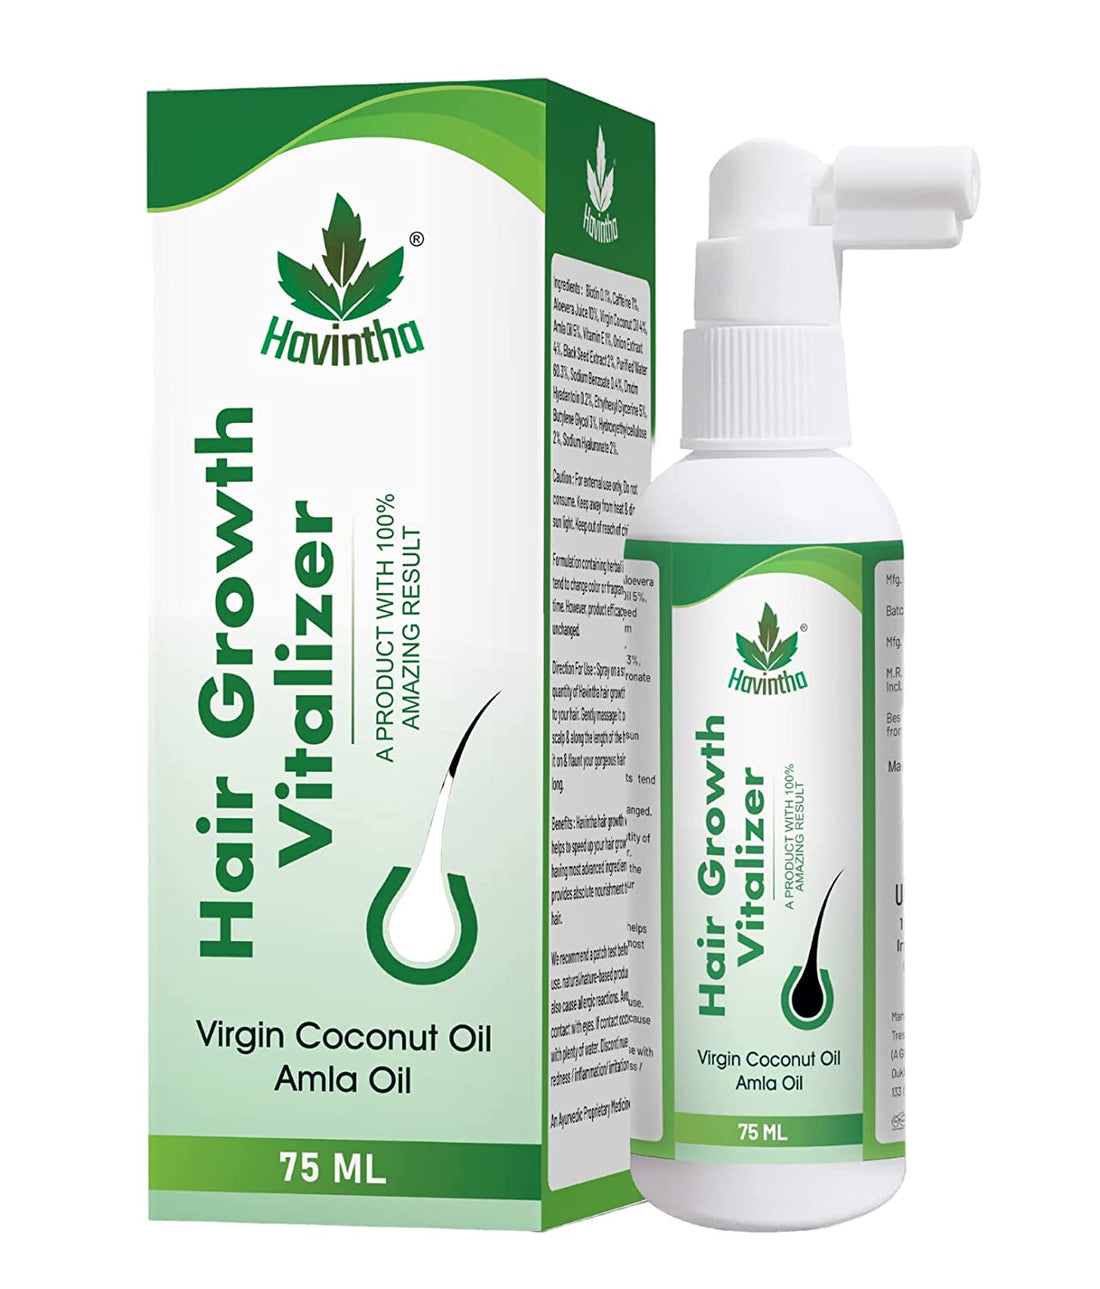 Havintha Natural Hair Growth Vitalizer For Boost Hair Growth &amp; Hair Fall Control | Hair Serum With Amla, Black Seed, Onion, Biotin, Green Tea, AQUA, PEA Protein, Vitamin E, and Caffeine - 75 ML